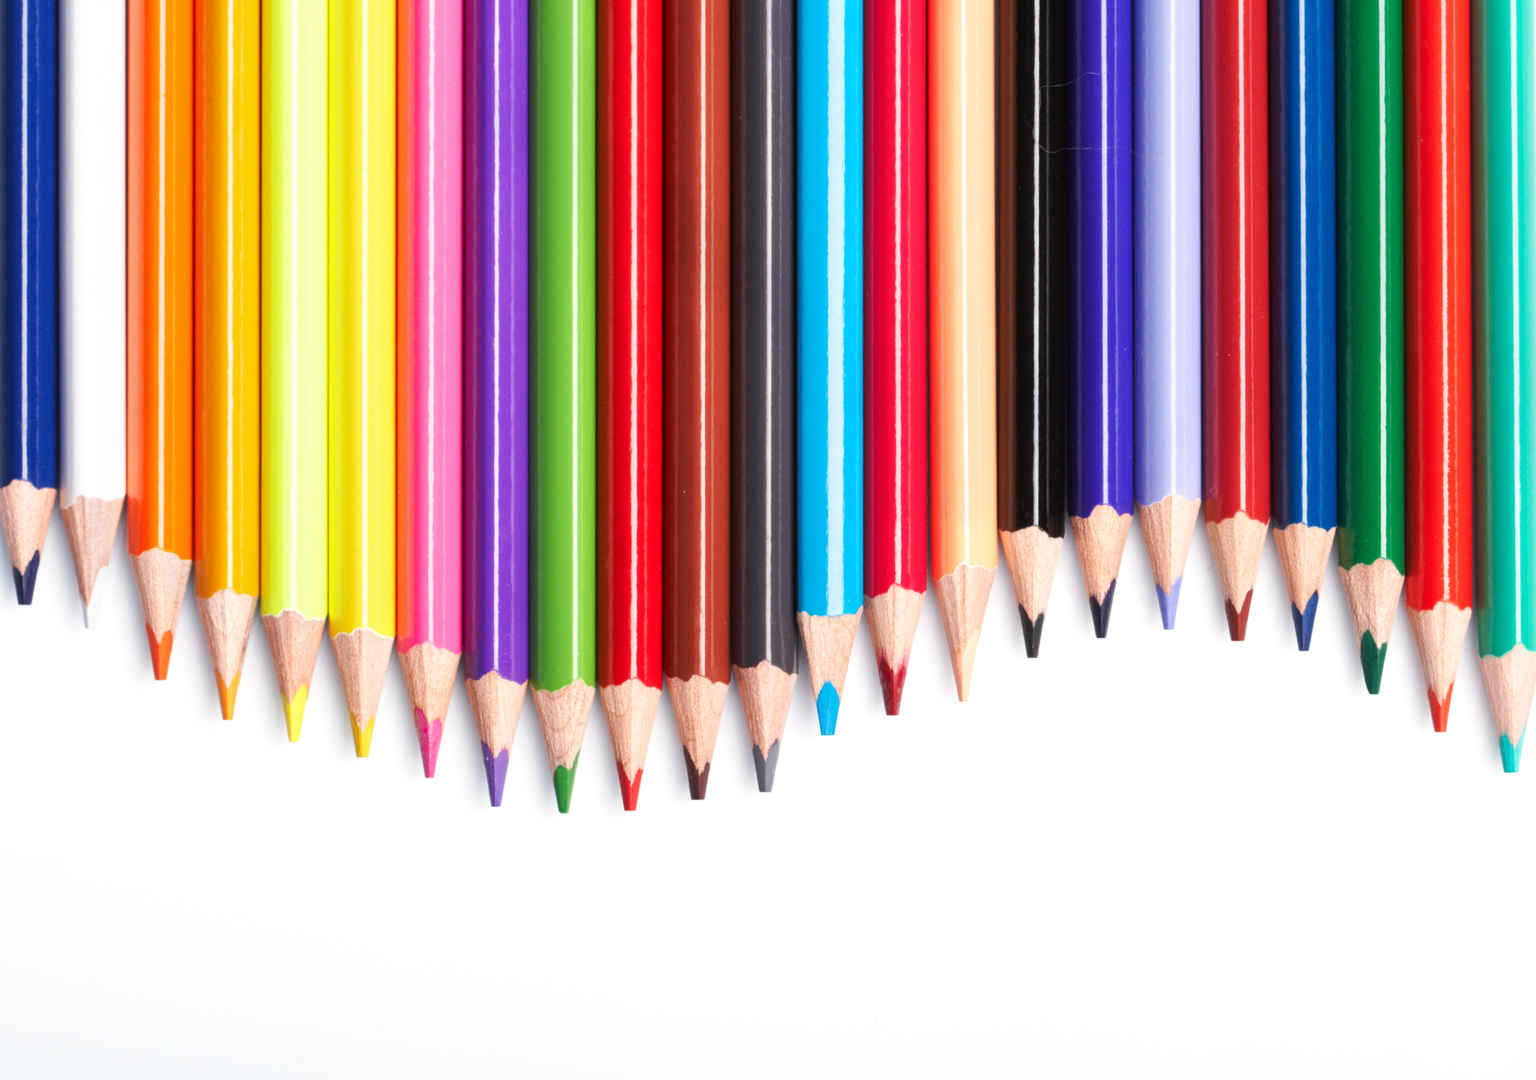 整齐排列的笔尖弯曲的彩色铅笔-